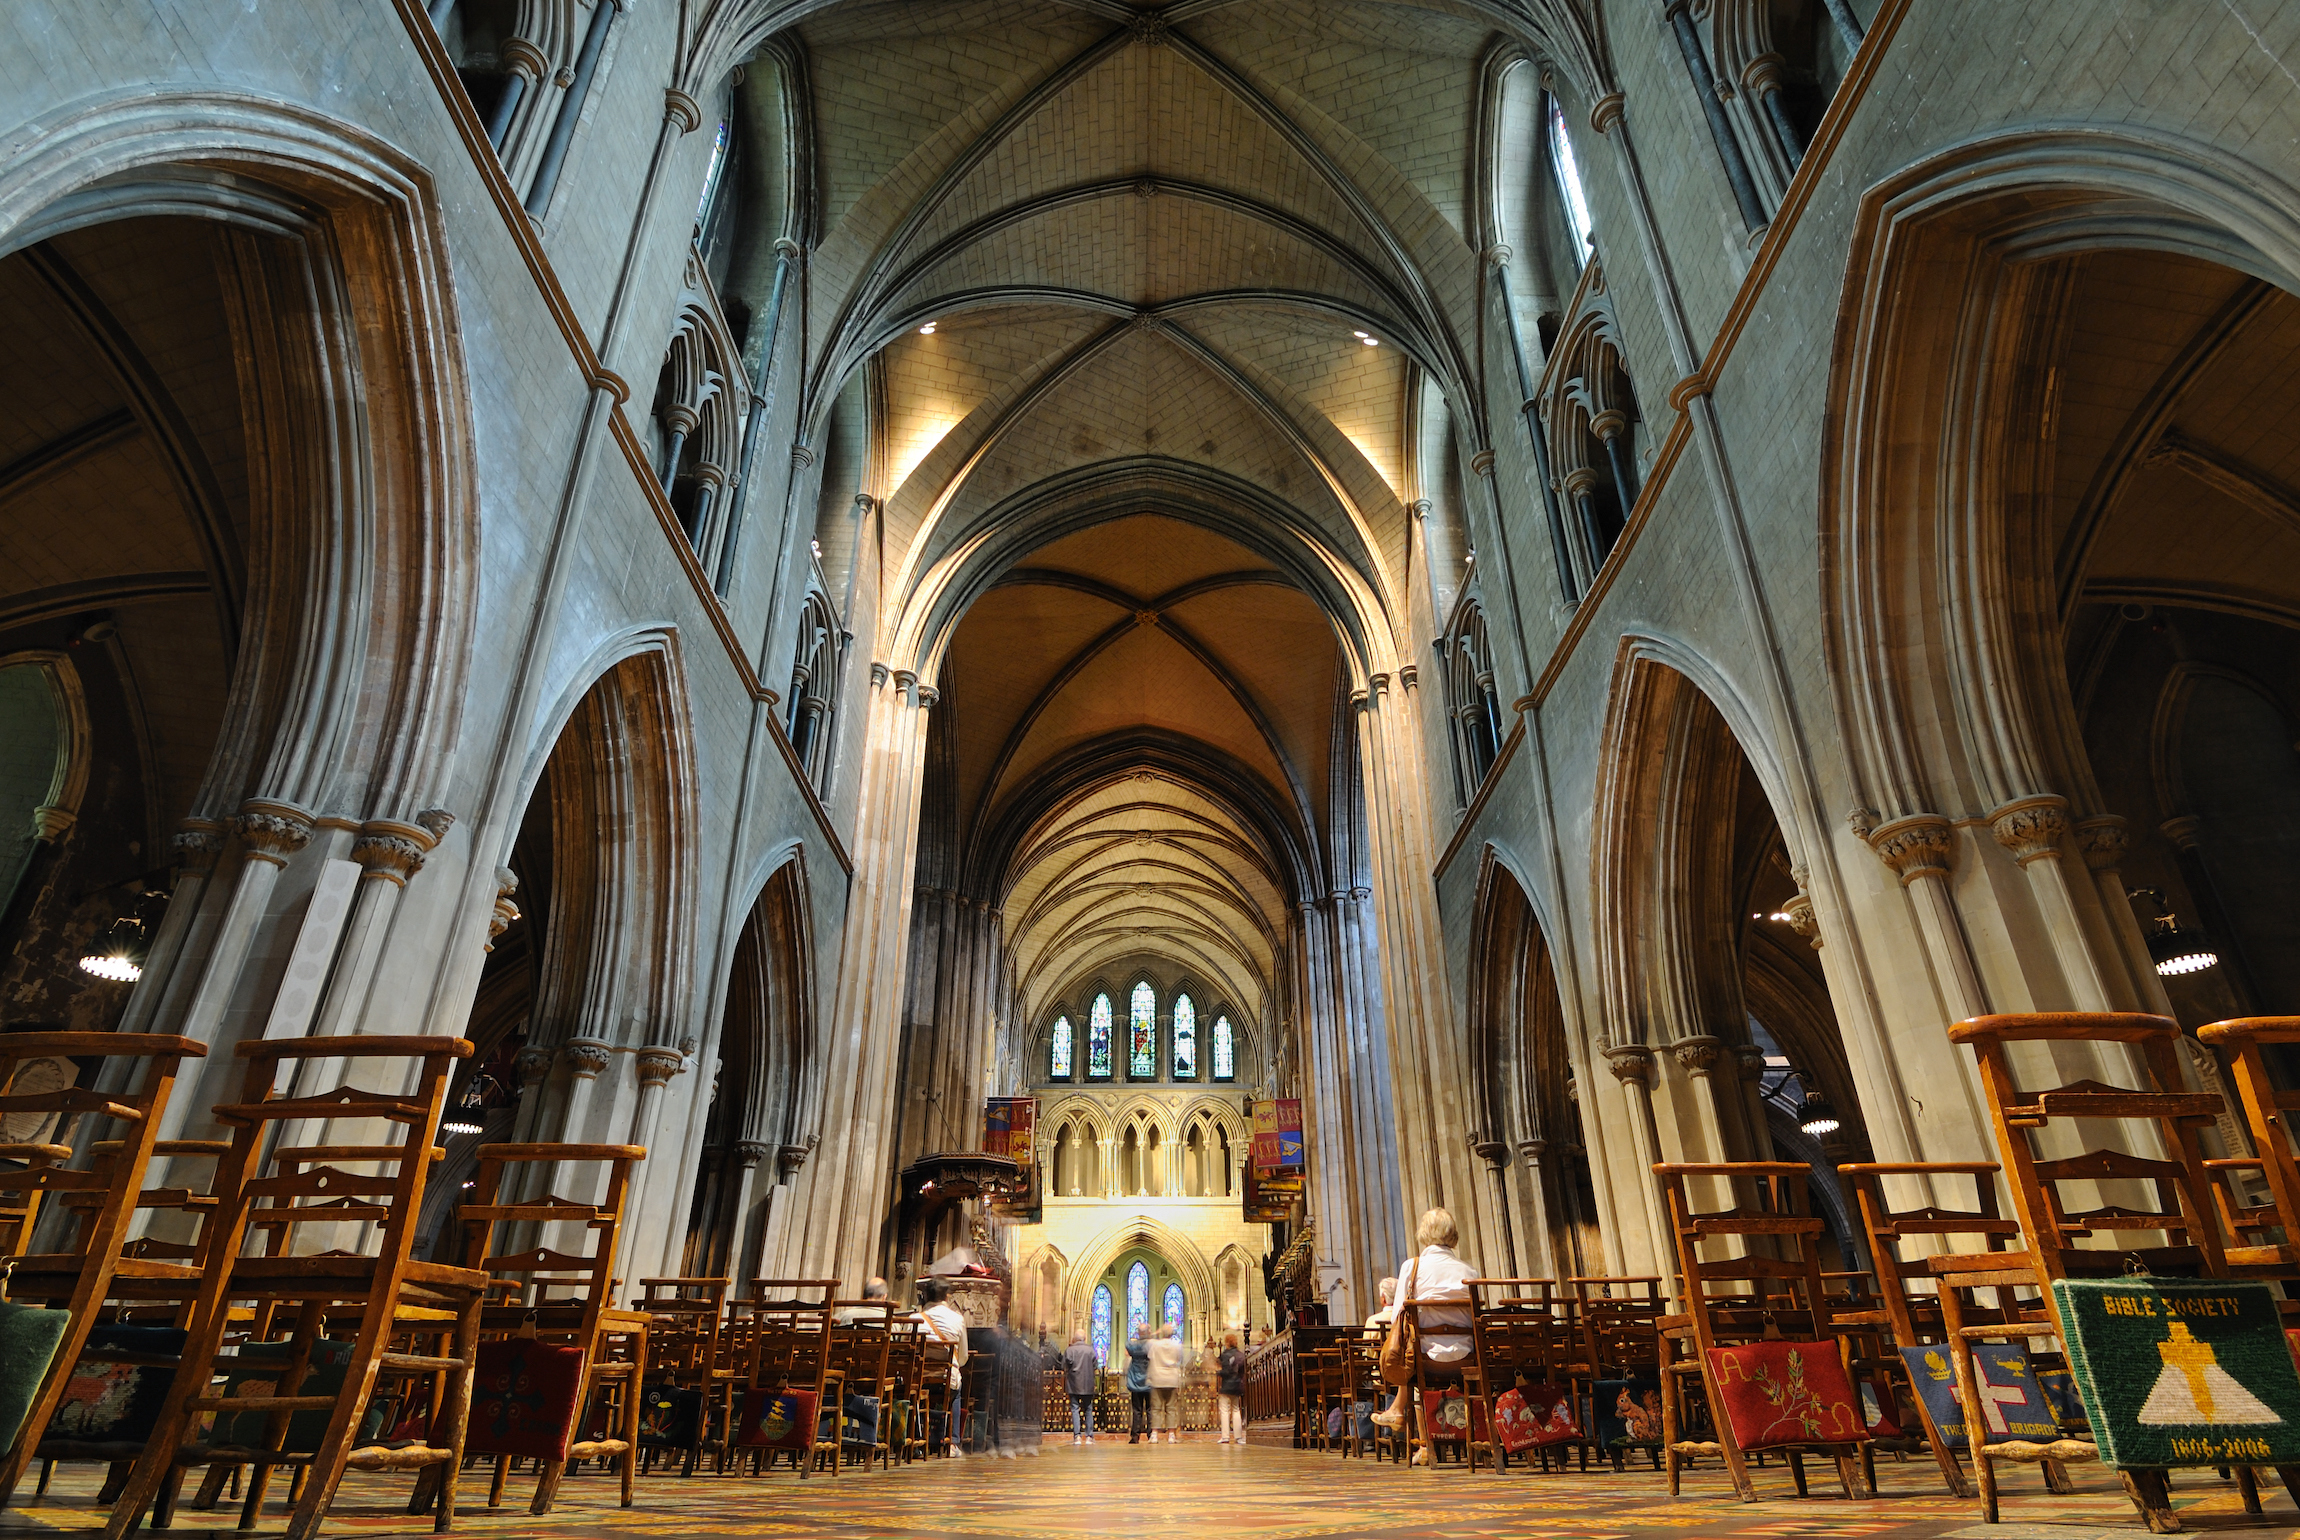 Wnętrze katedry św. Patryka w Dublinie, Irlandia.